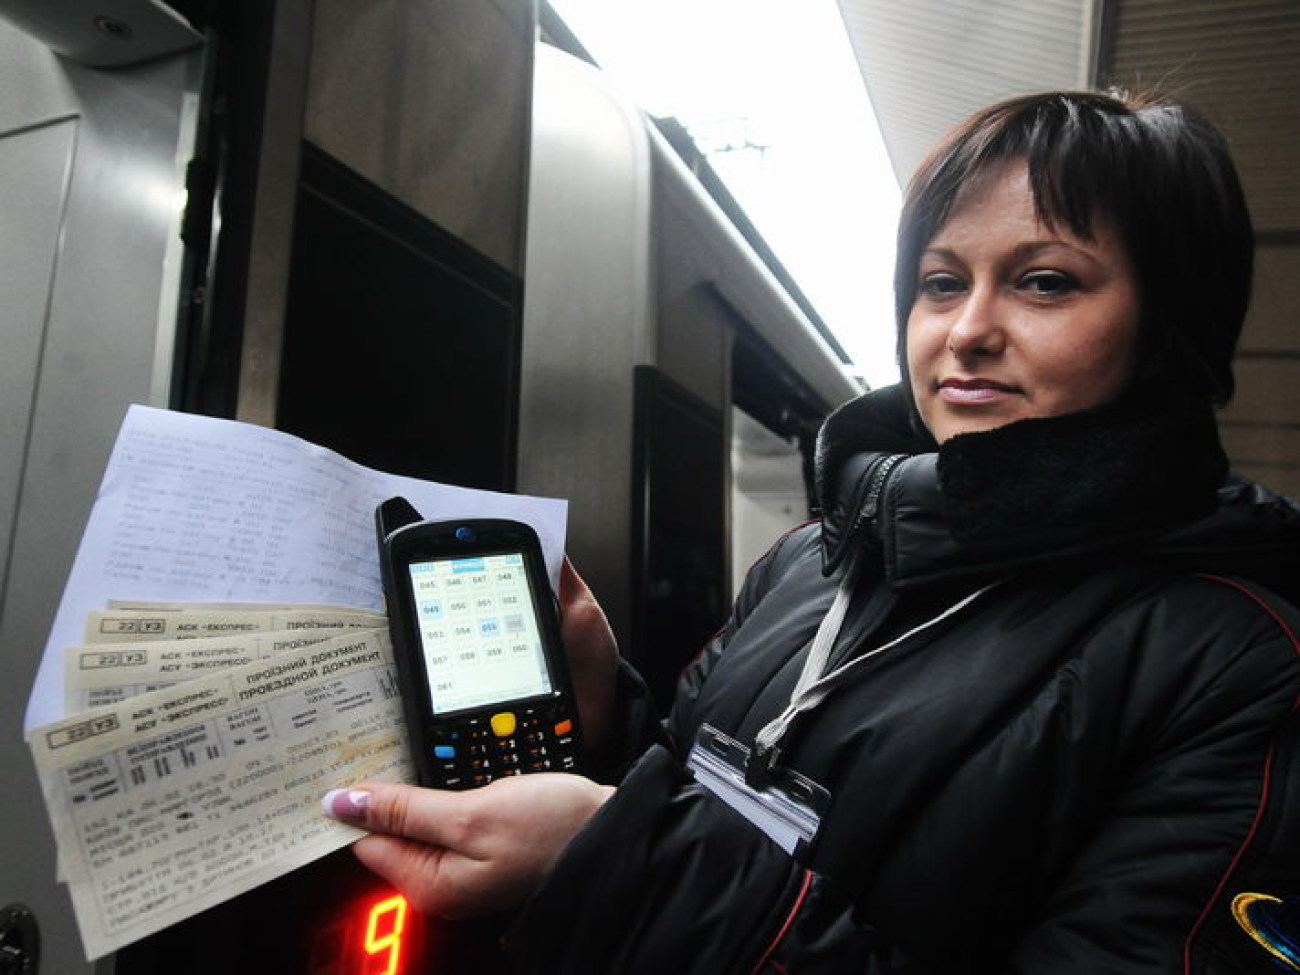 Украинская железная дорога презентовала электронные билеты, 6 февраля 2013г.